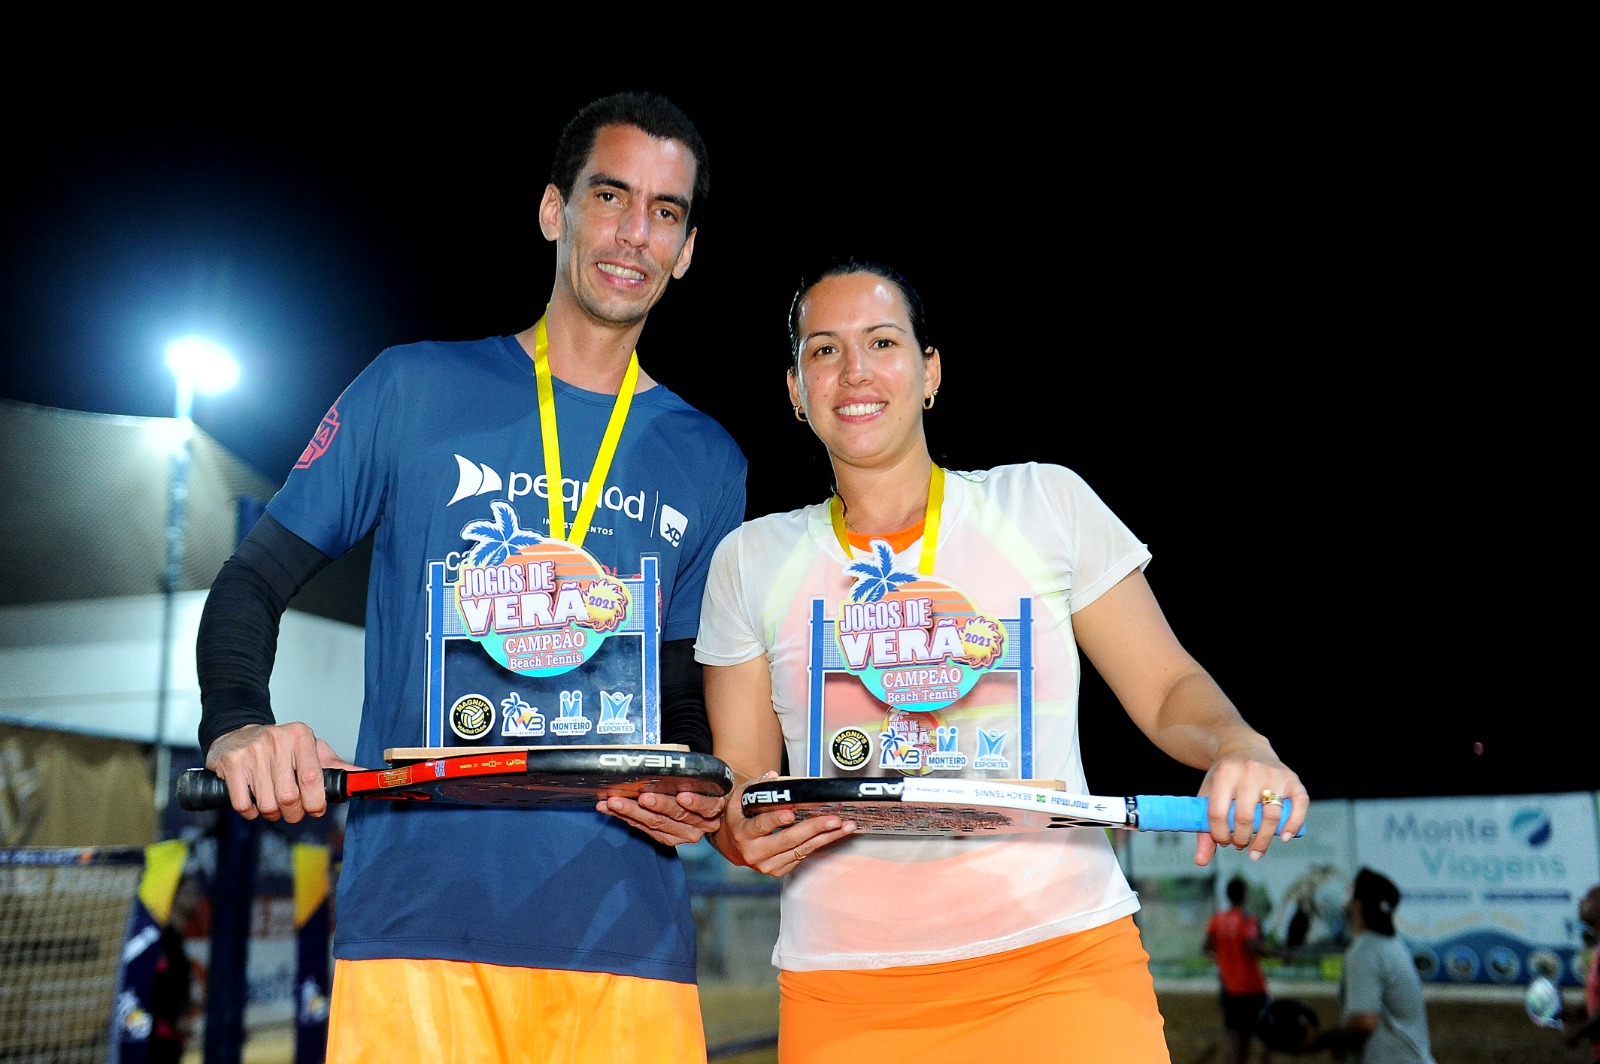 Jogos-de-Verao-24 Com participação recorde, competição de beach tennis encerra com chave de ouro a 1ª edição dos Jogos de Verão de Monteiro